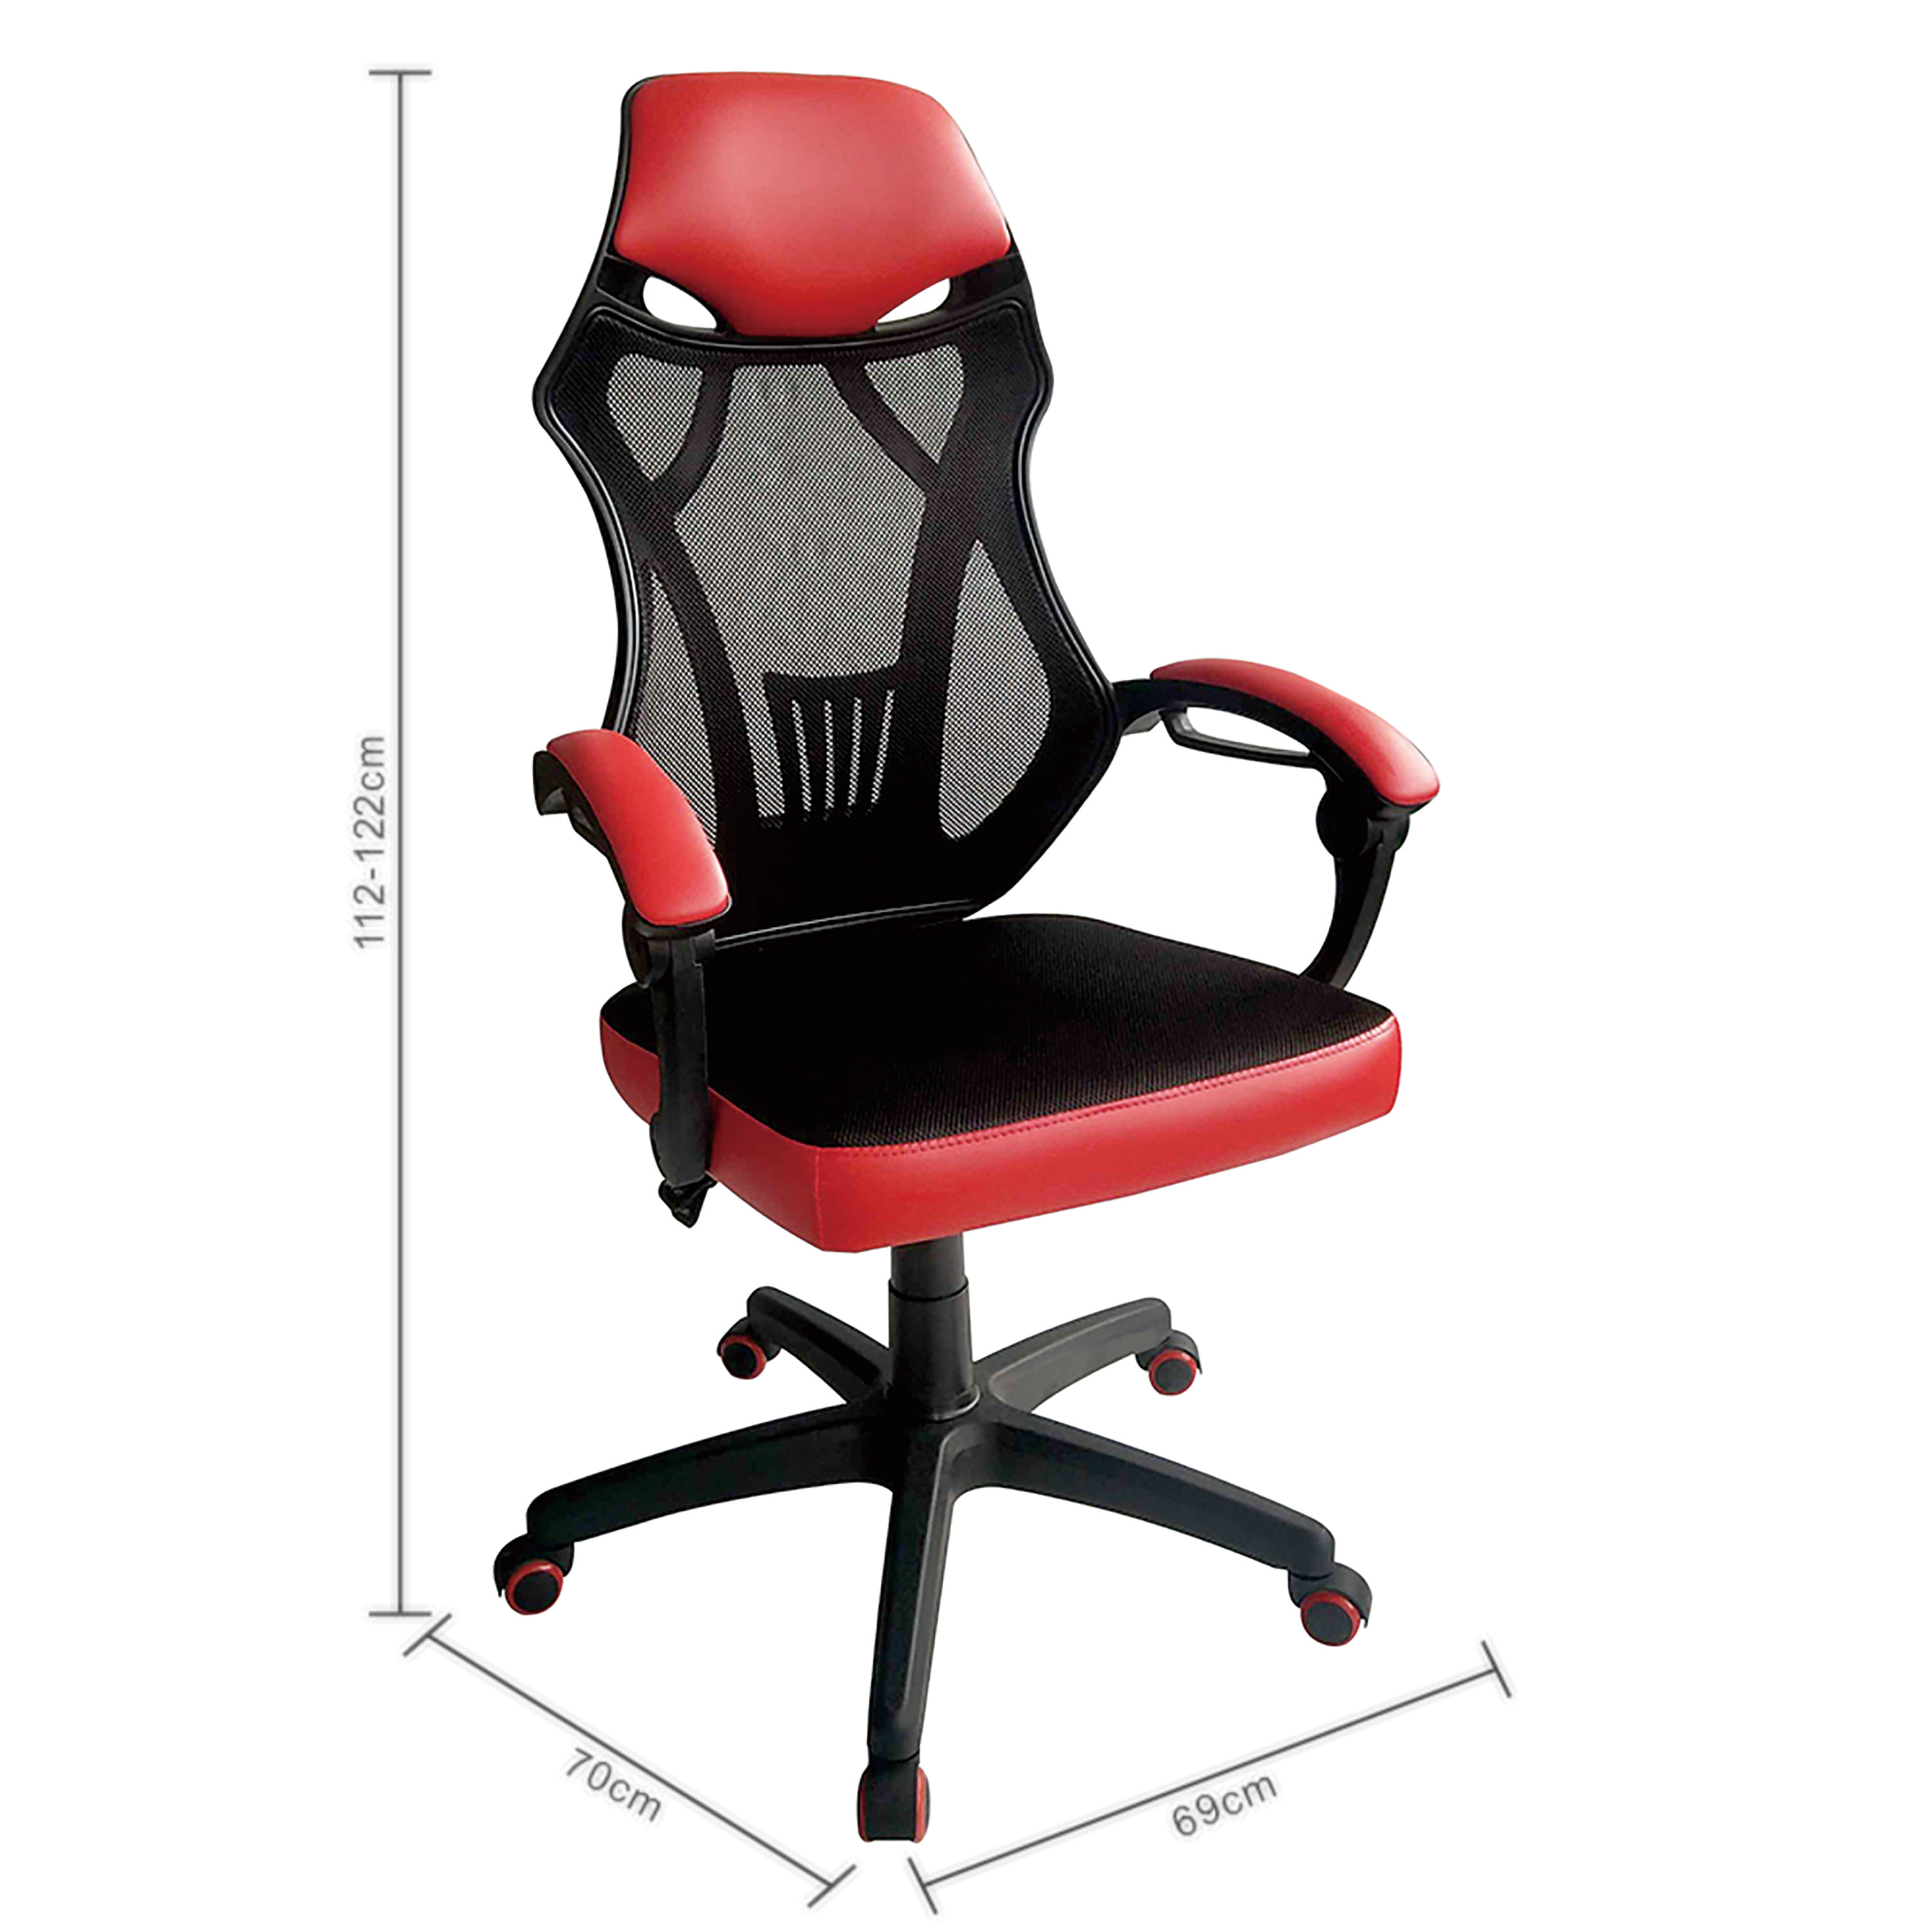 Pack de 4 sillas oficina rojo ref: 122 PC - Papeleria Segarra